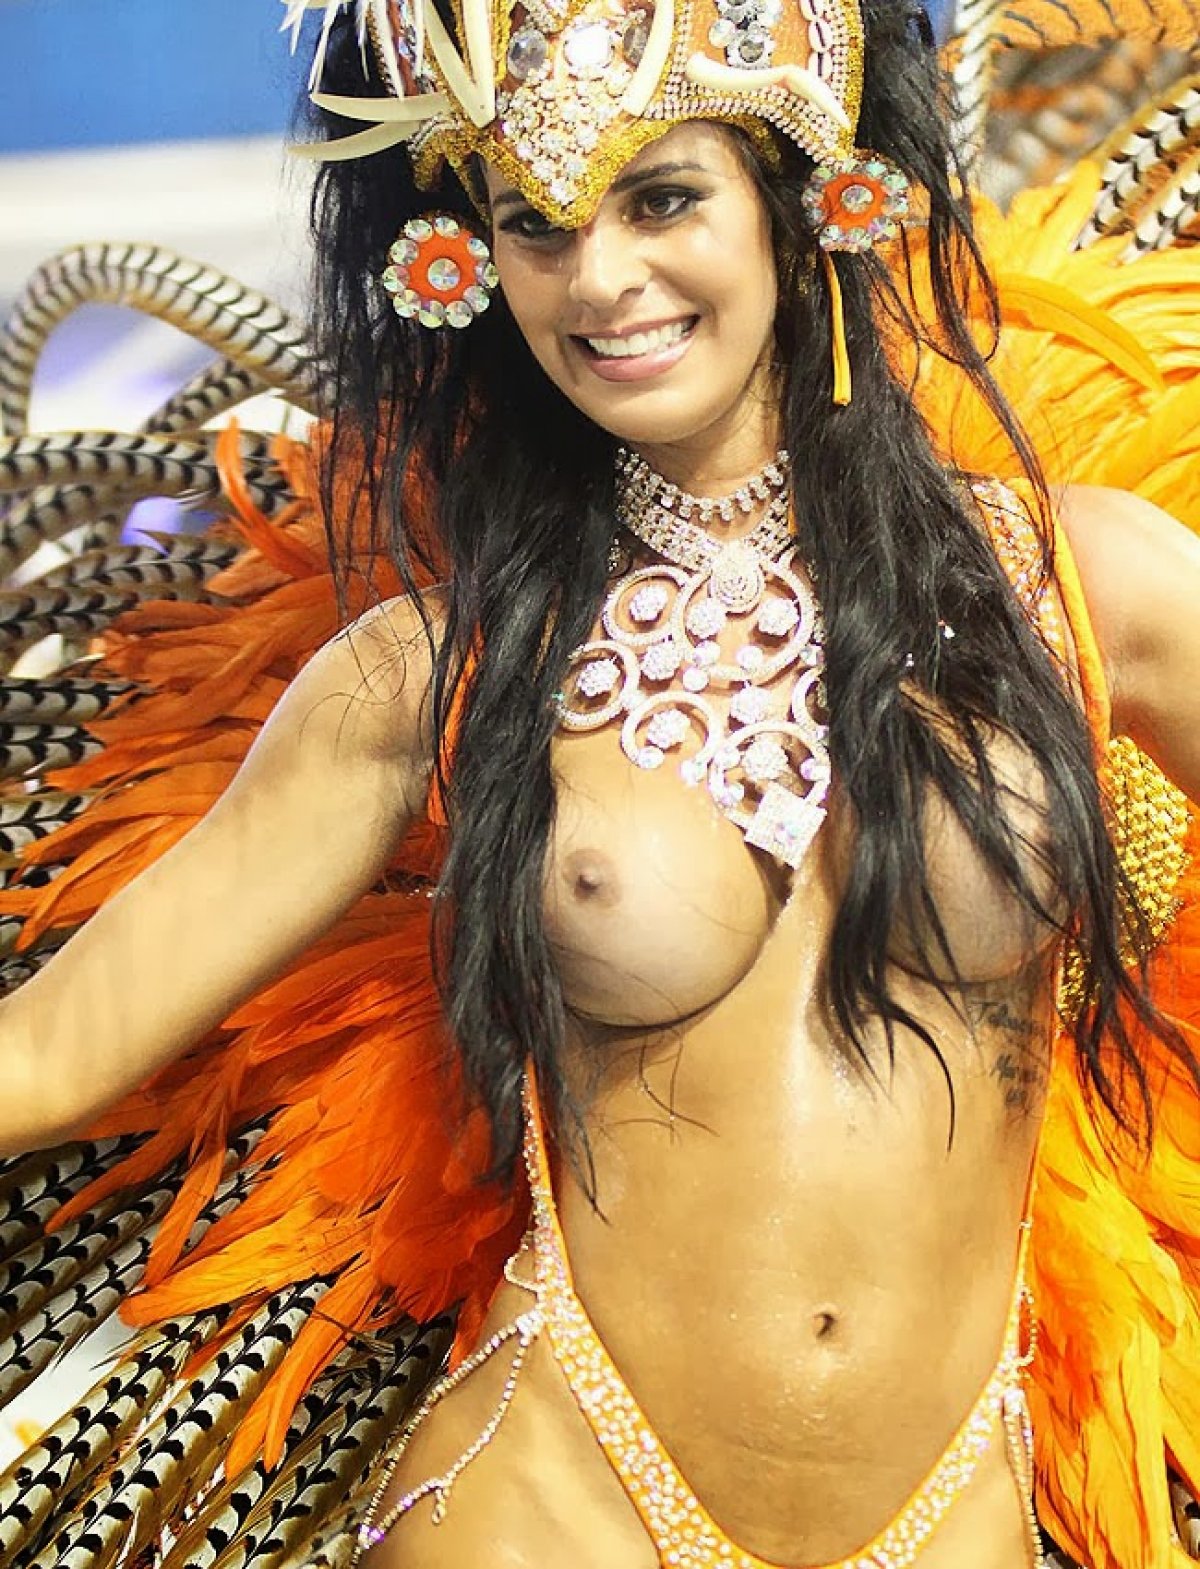 Бразильский карнавал удовольствий: они любят трахаться по полной!